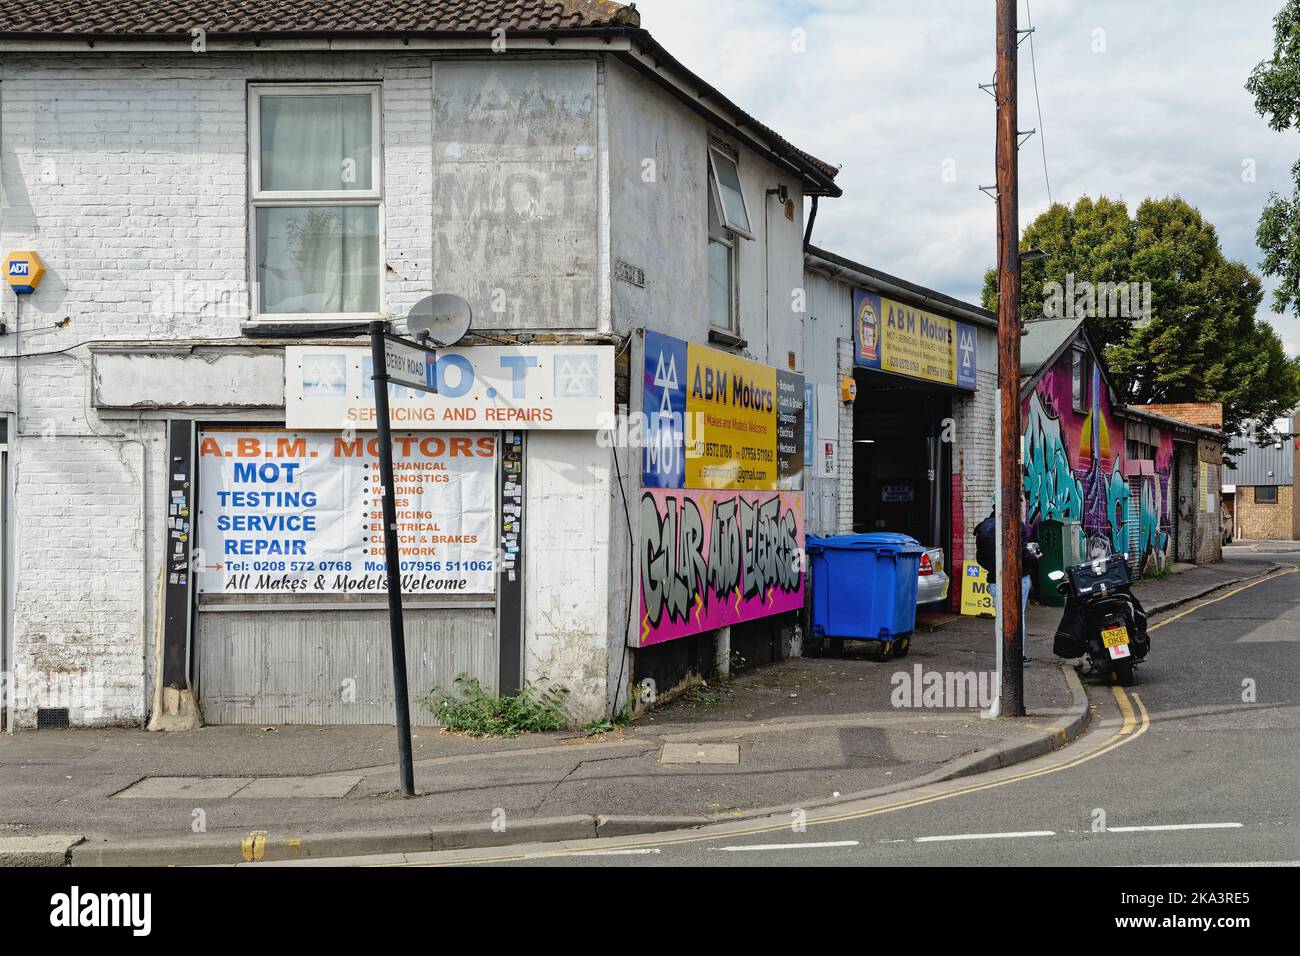 Un garage de réparation et d'entretien de moteurs dans la rue Hounslow West London, Angleterre, Royaume-Uni Banque D'Images